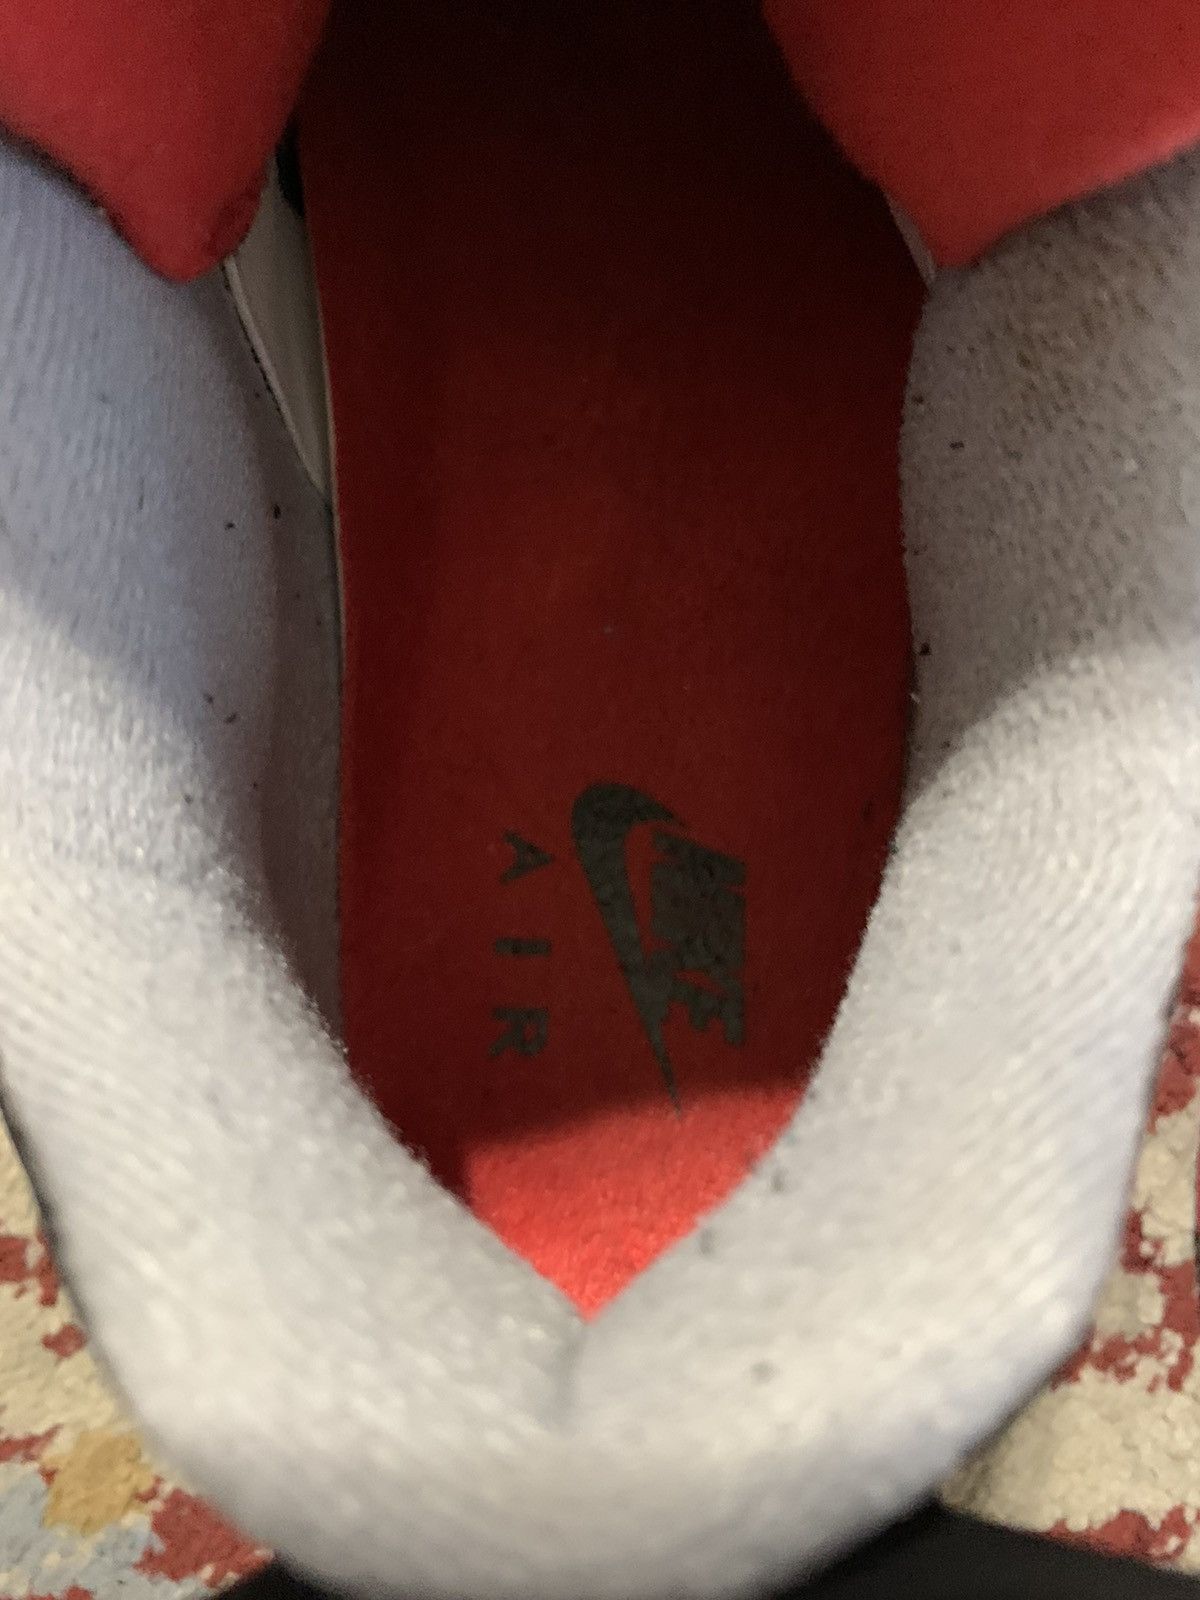 Nike Air Jordan 4 Retro OG 2019 Bred 2019 Size US 13 / EU 46 - 10 Thumbnail